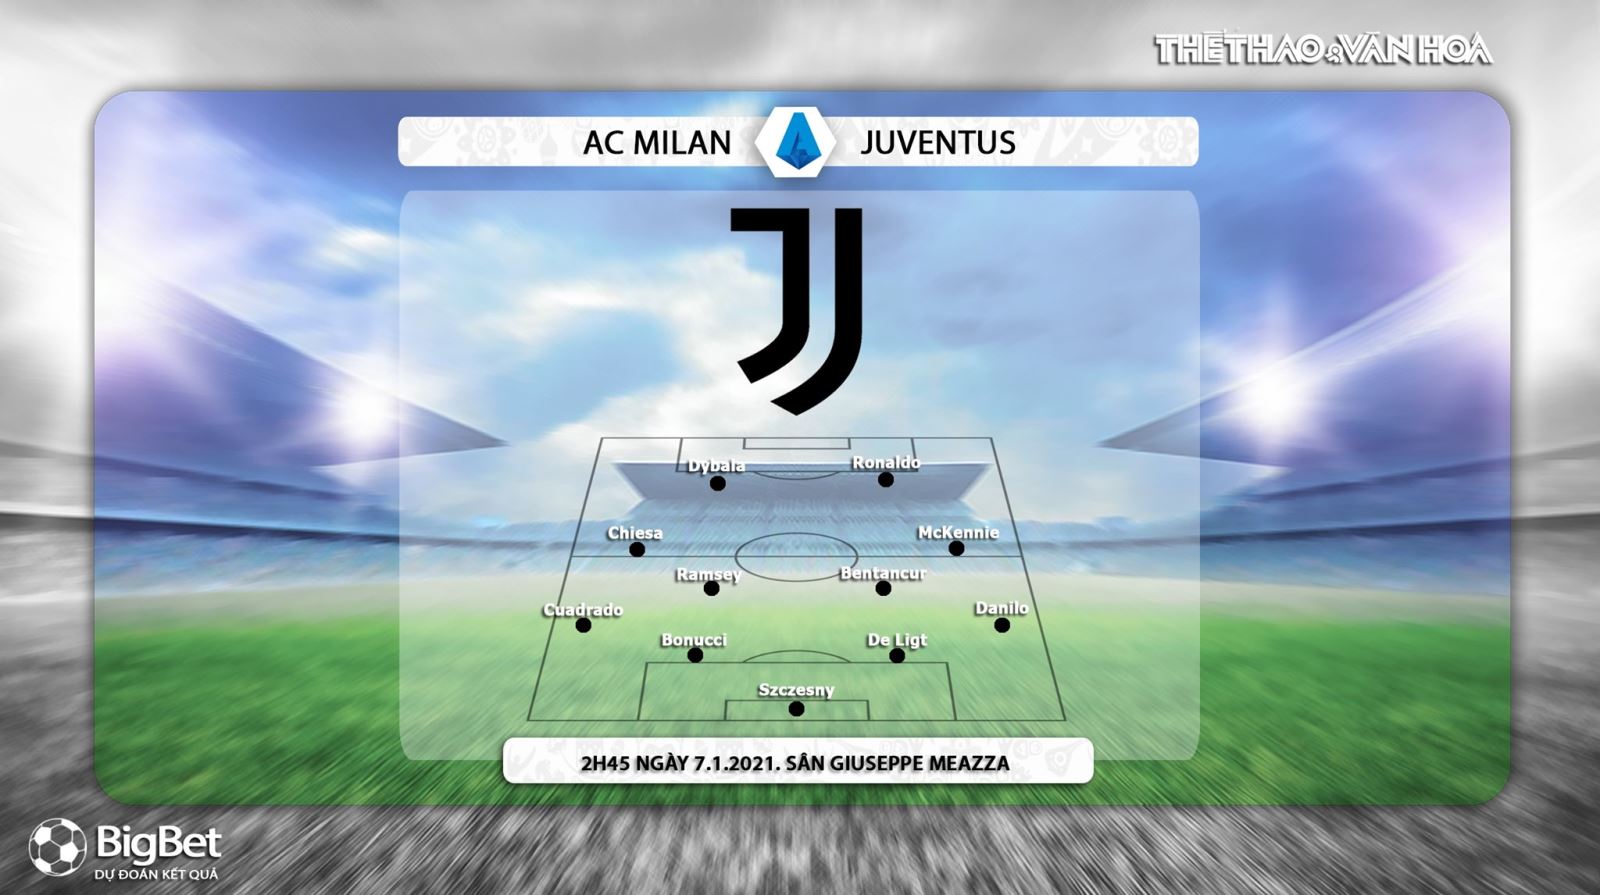 Nhận định bóng đá AC Milan vs Juventus, AC Milan vs Juventus, ac milan, juventus, bóng đá, nhận định bóng đá bóng đá, trực tiếp bóng đá, lịch thi đấu, nhận định